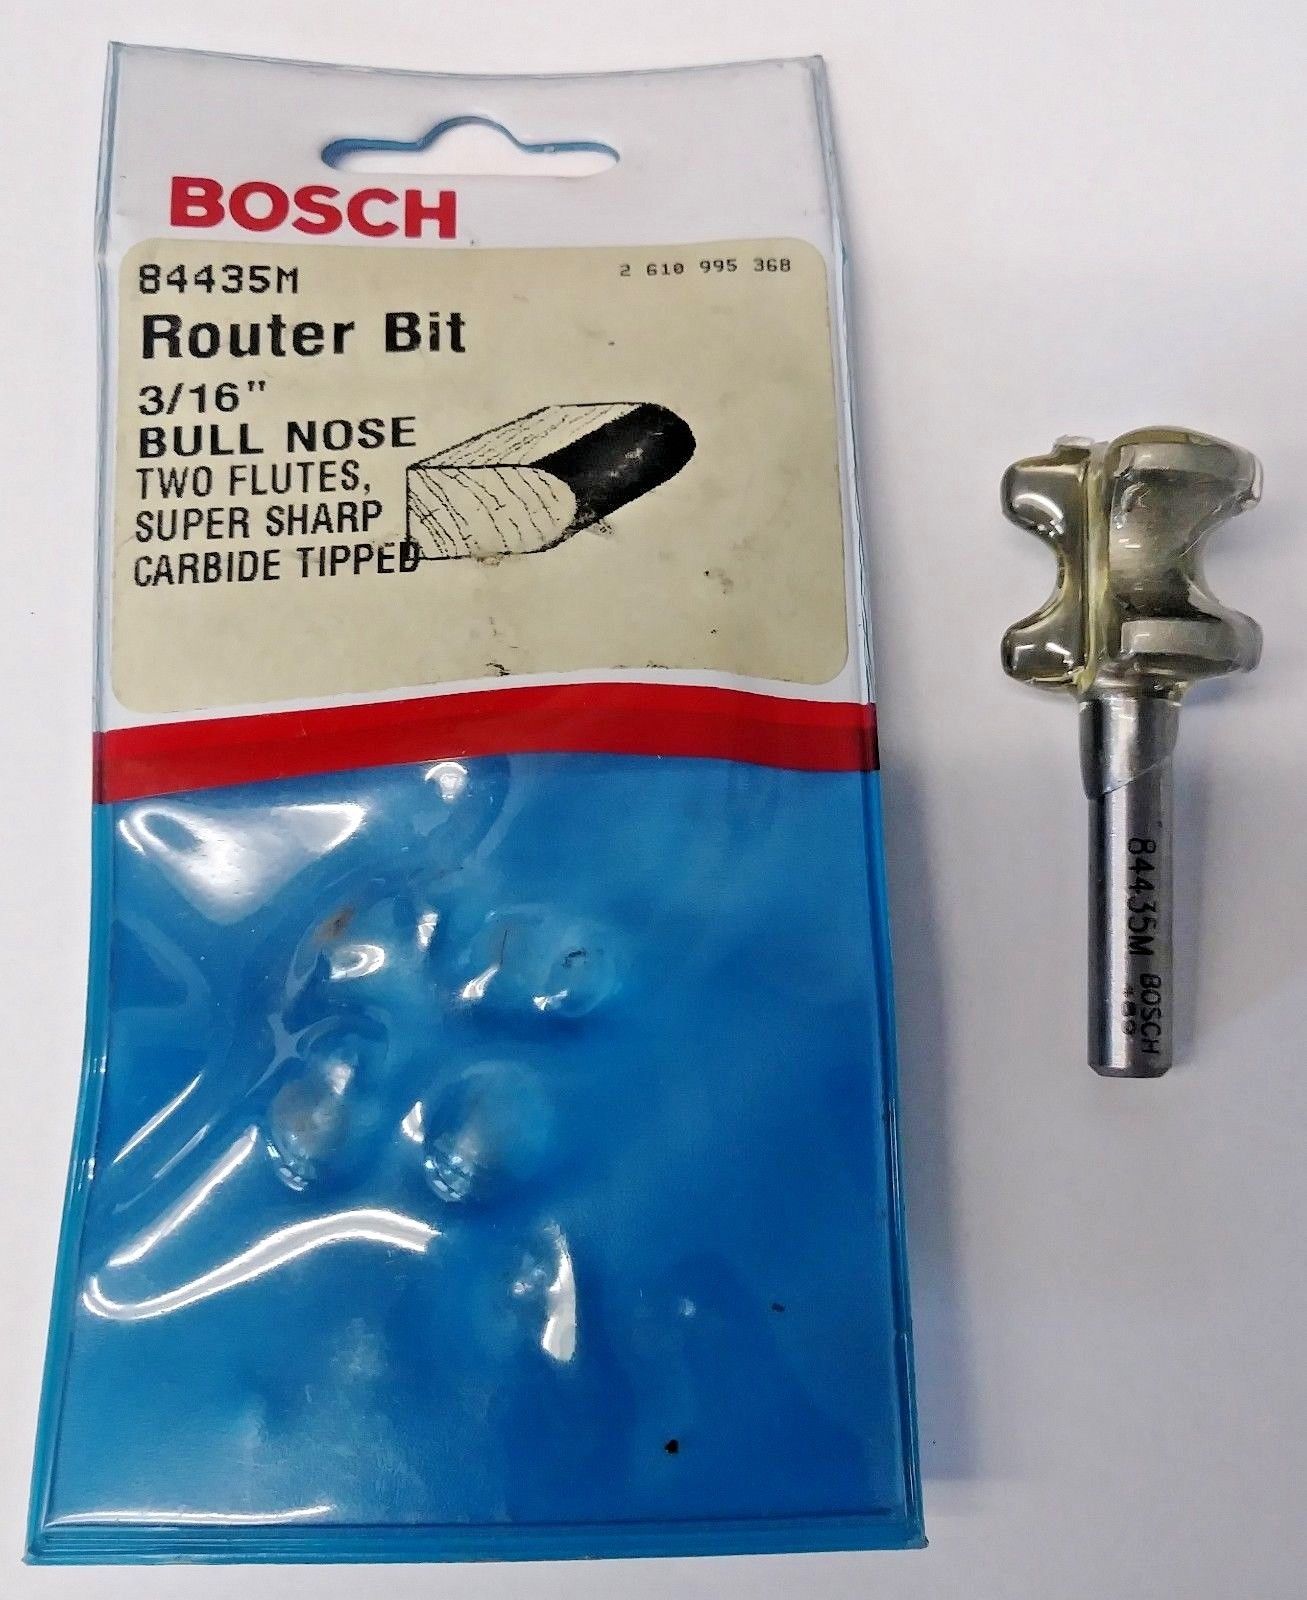 Bosch 84435M 3/16" Cut Bull Nose Router Bit 1/4" Shank USA